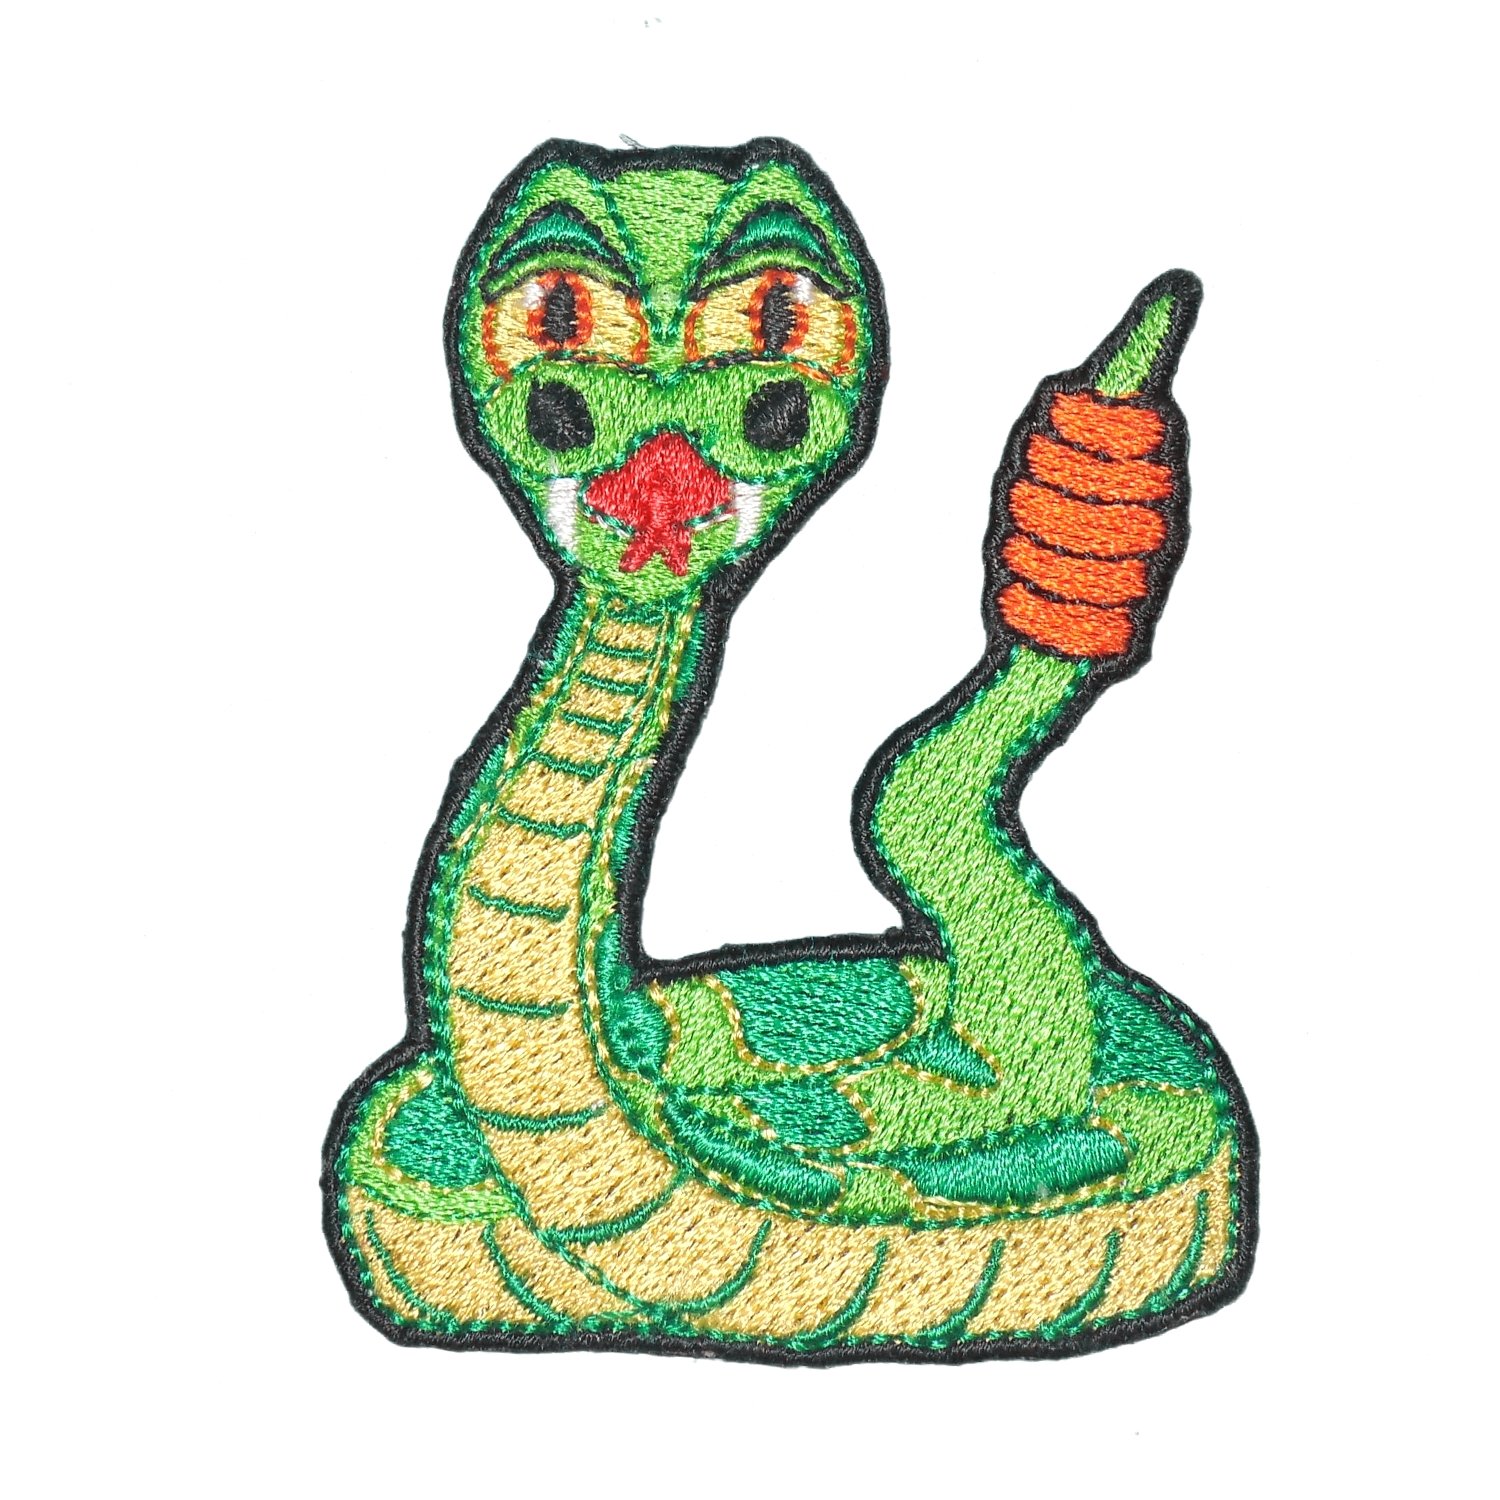 clipart snake poisonous snake